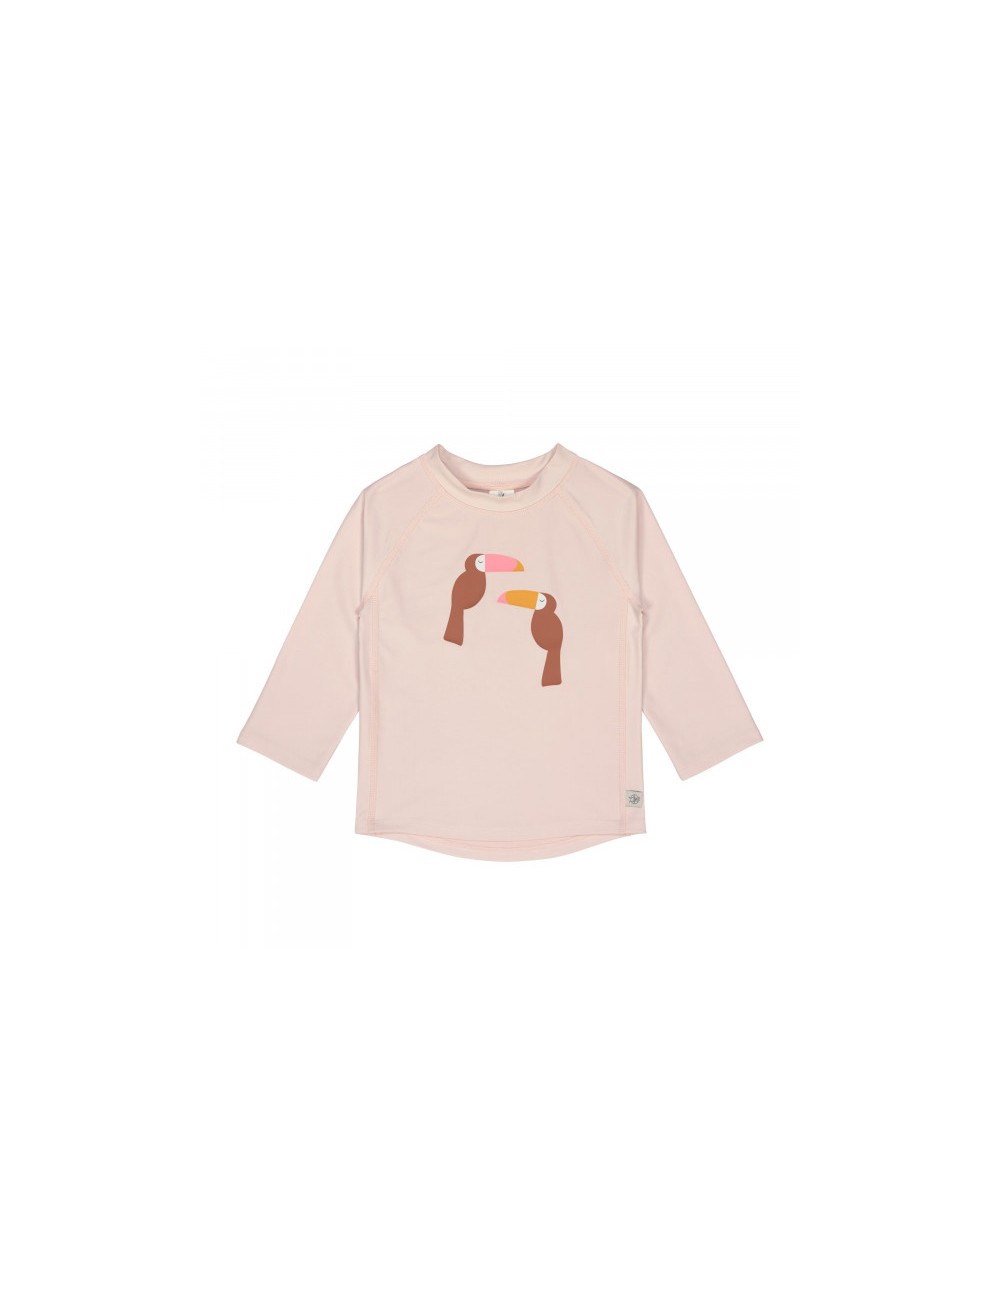 T-shirt anti-UV manches longues enfants - Toucan rose poudré